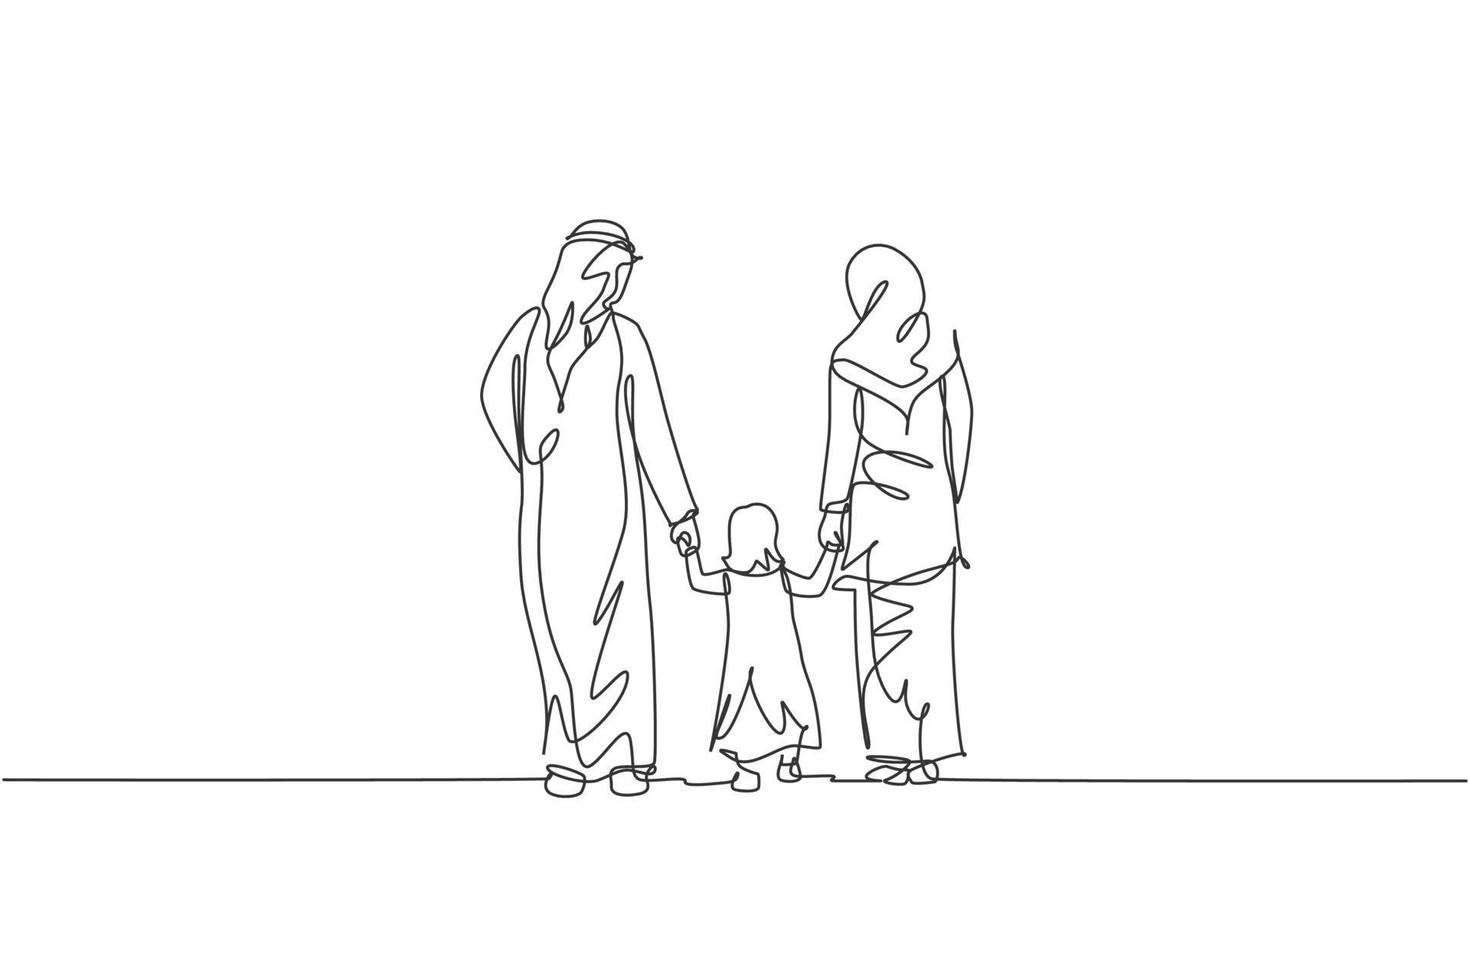 único desenho de linha contínua da jovem mãe e pai islâmicos caminham enquanto seguram a mão de sua filha juntos. conceito de parentalidade de família feliz muçulmana árabe. ilustração em vetor desenho desenho de uma linha